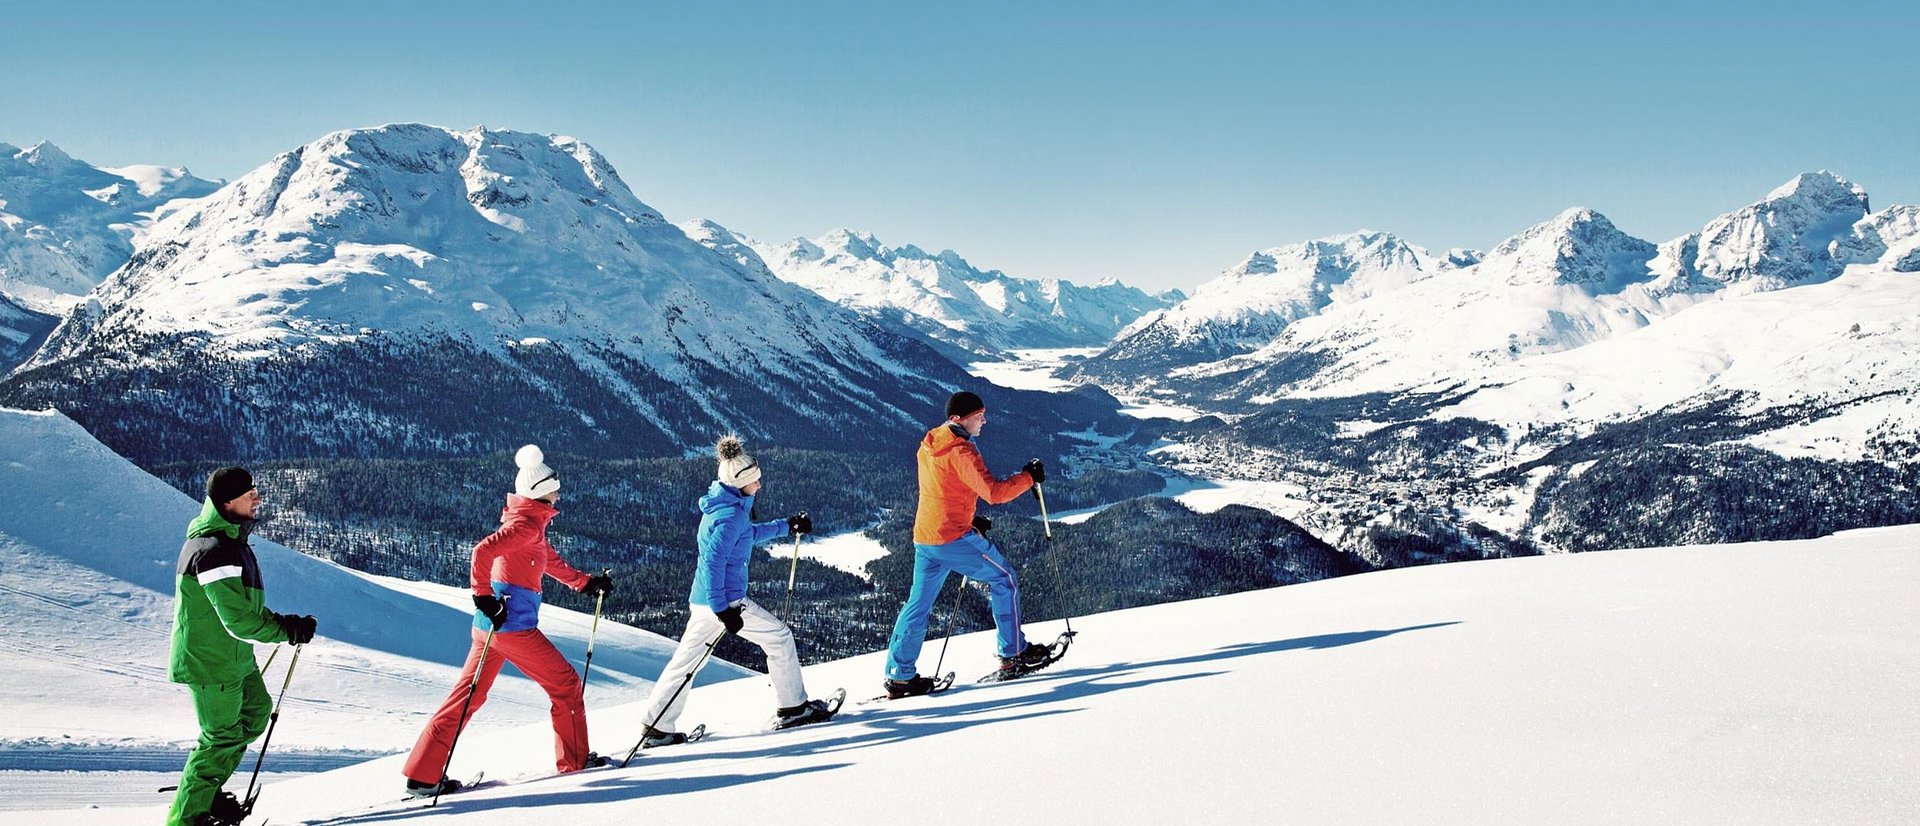 Buchen Sie jetzt Ihren nächsten Ski und Wellnessurlaub in den schönsten Bergregionen Europas